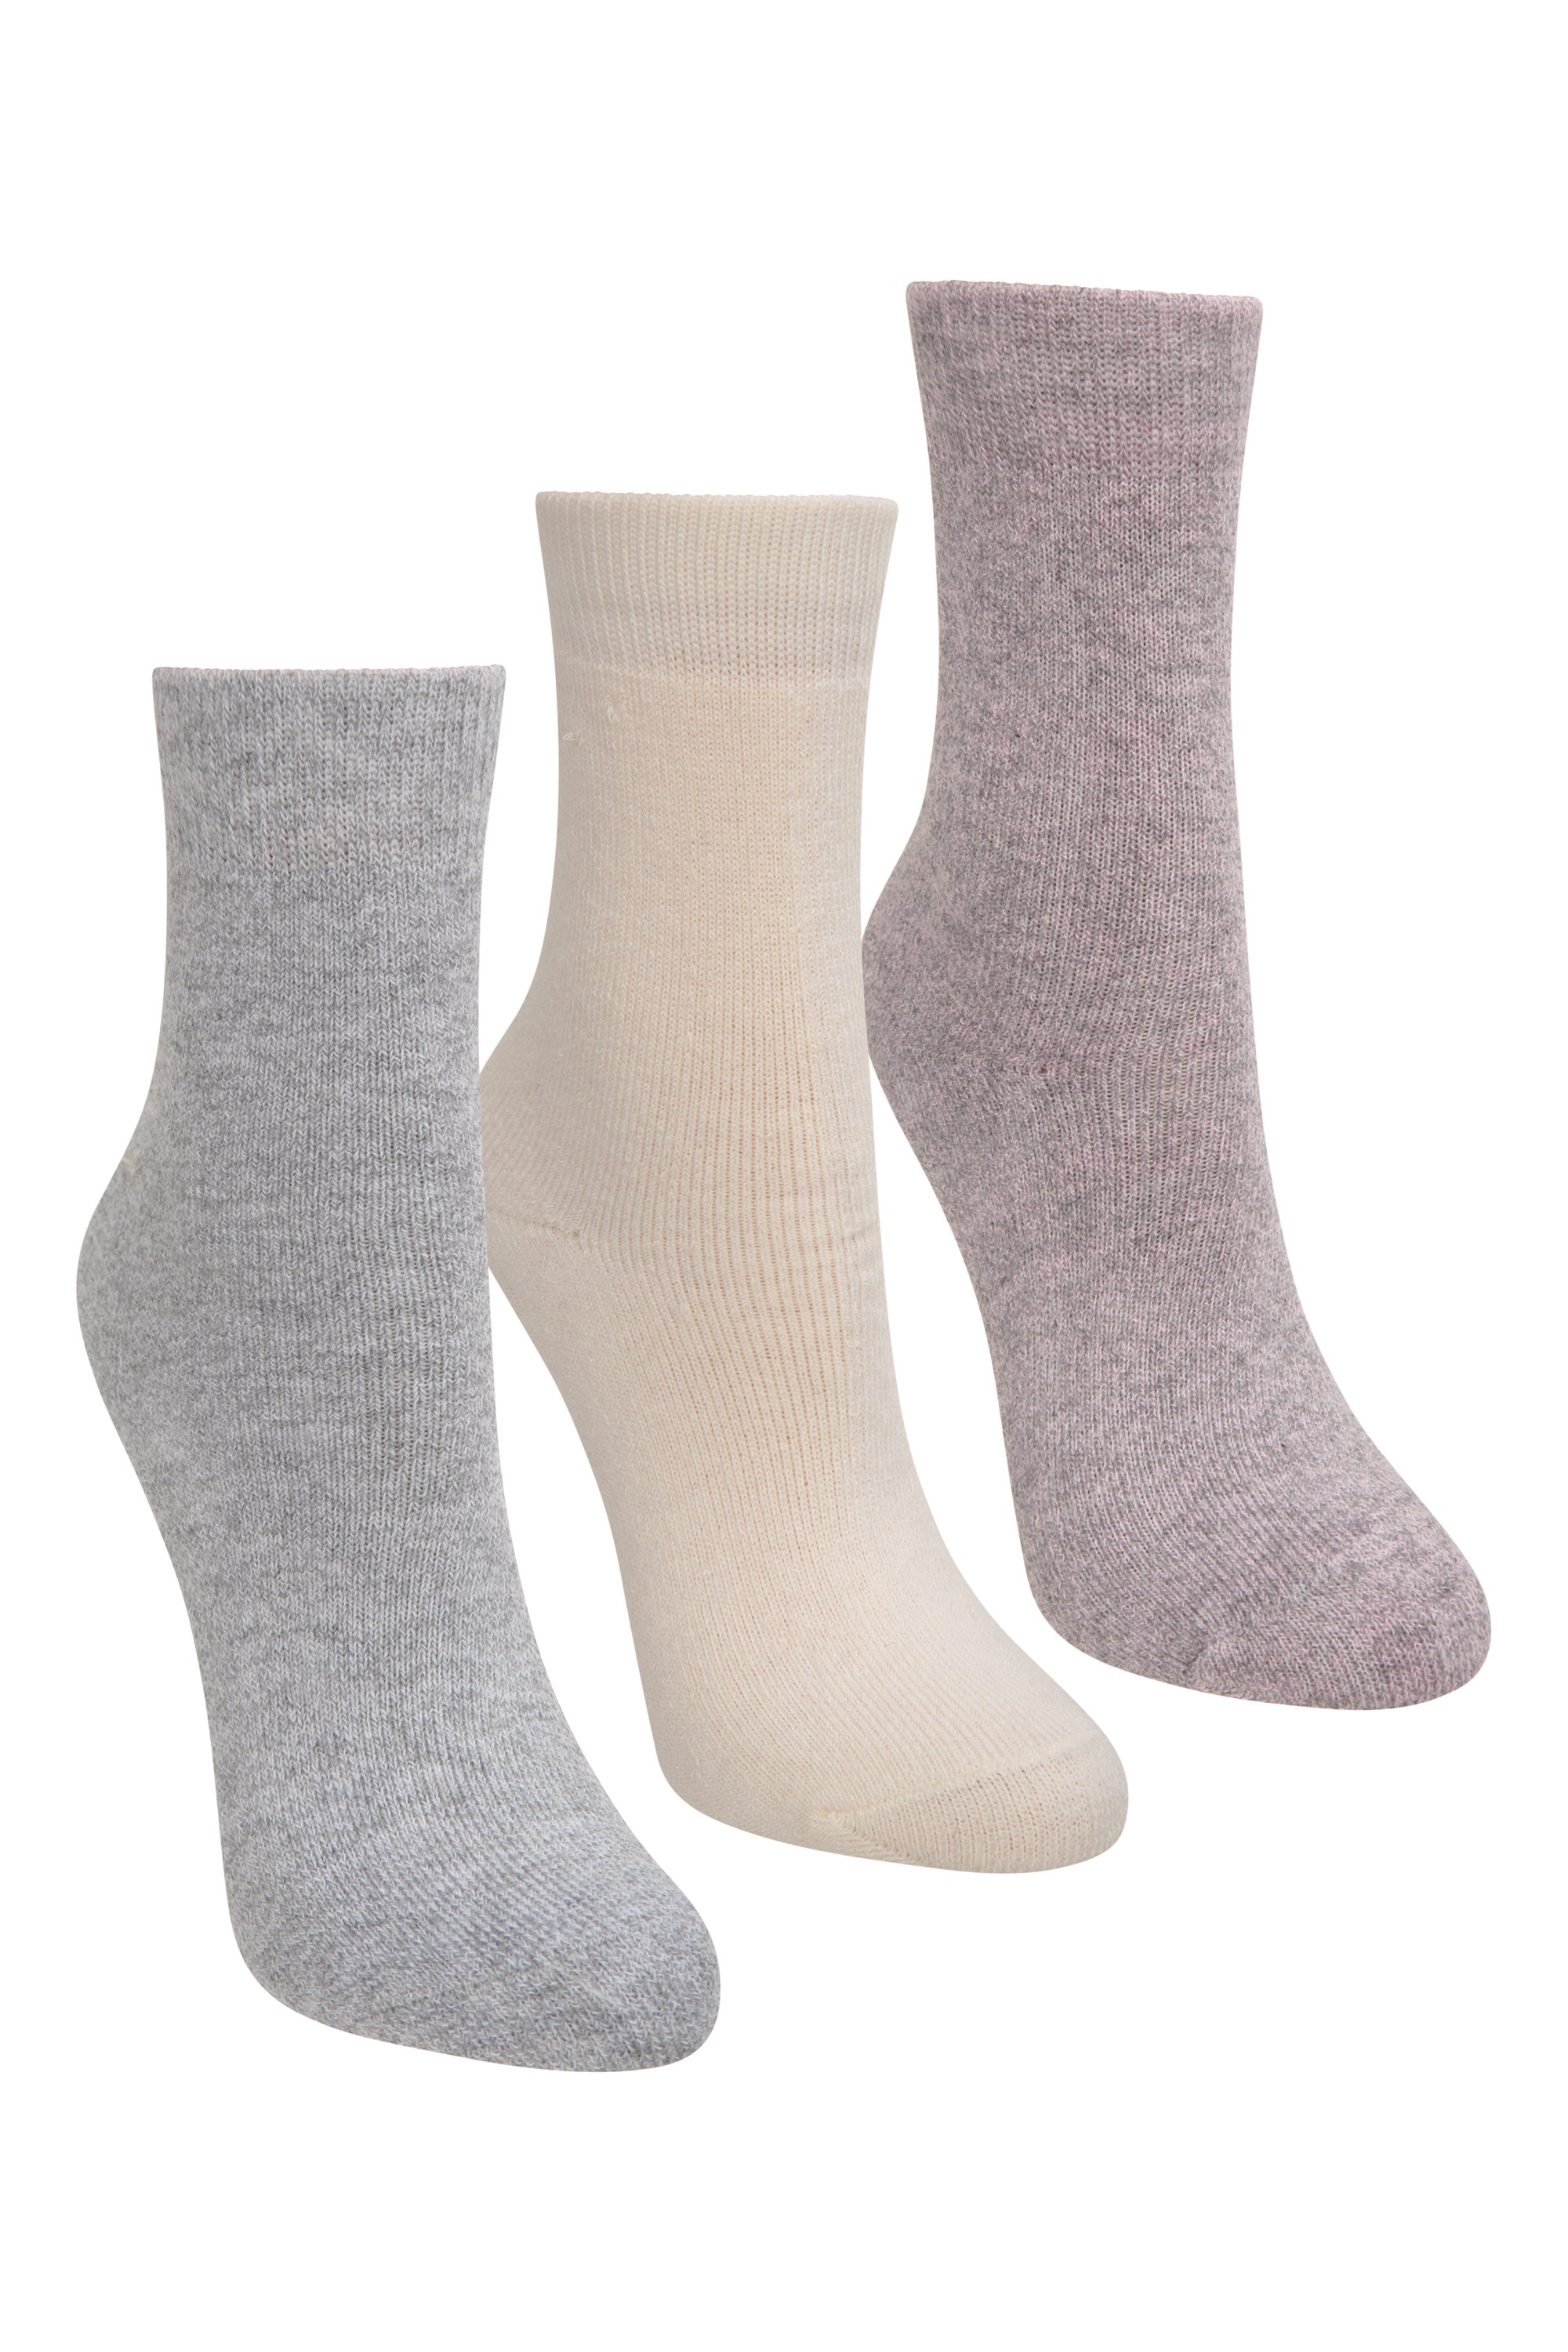 Mountain Warehouse Camo Kids Ankle Socks 5 Pack Girls & Boys Socks 